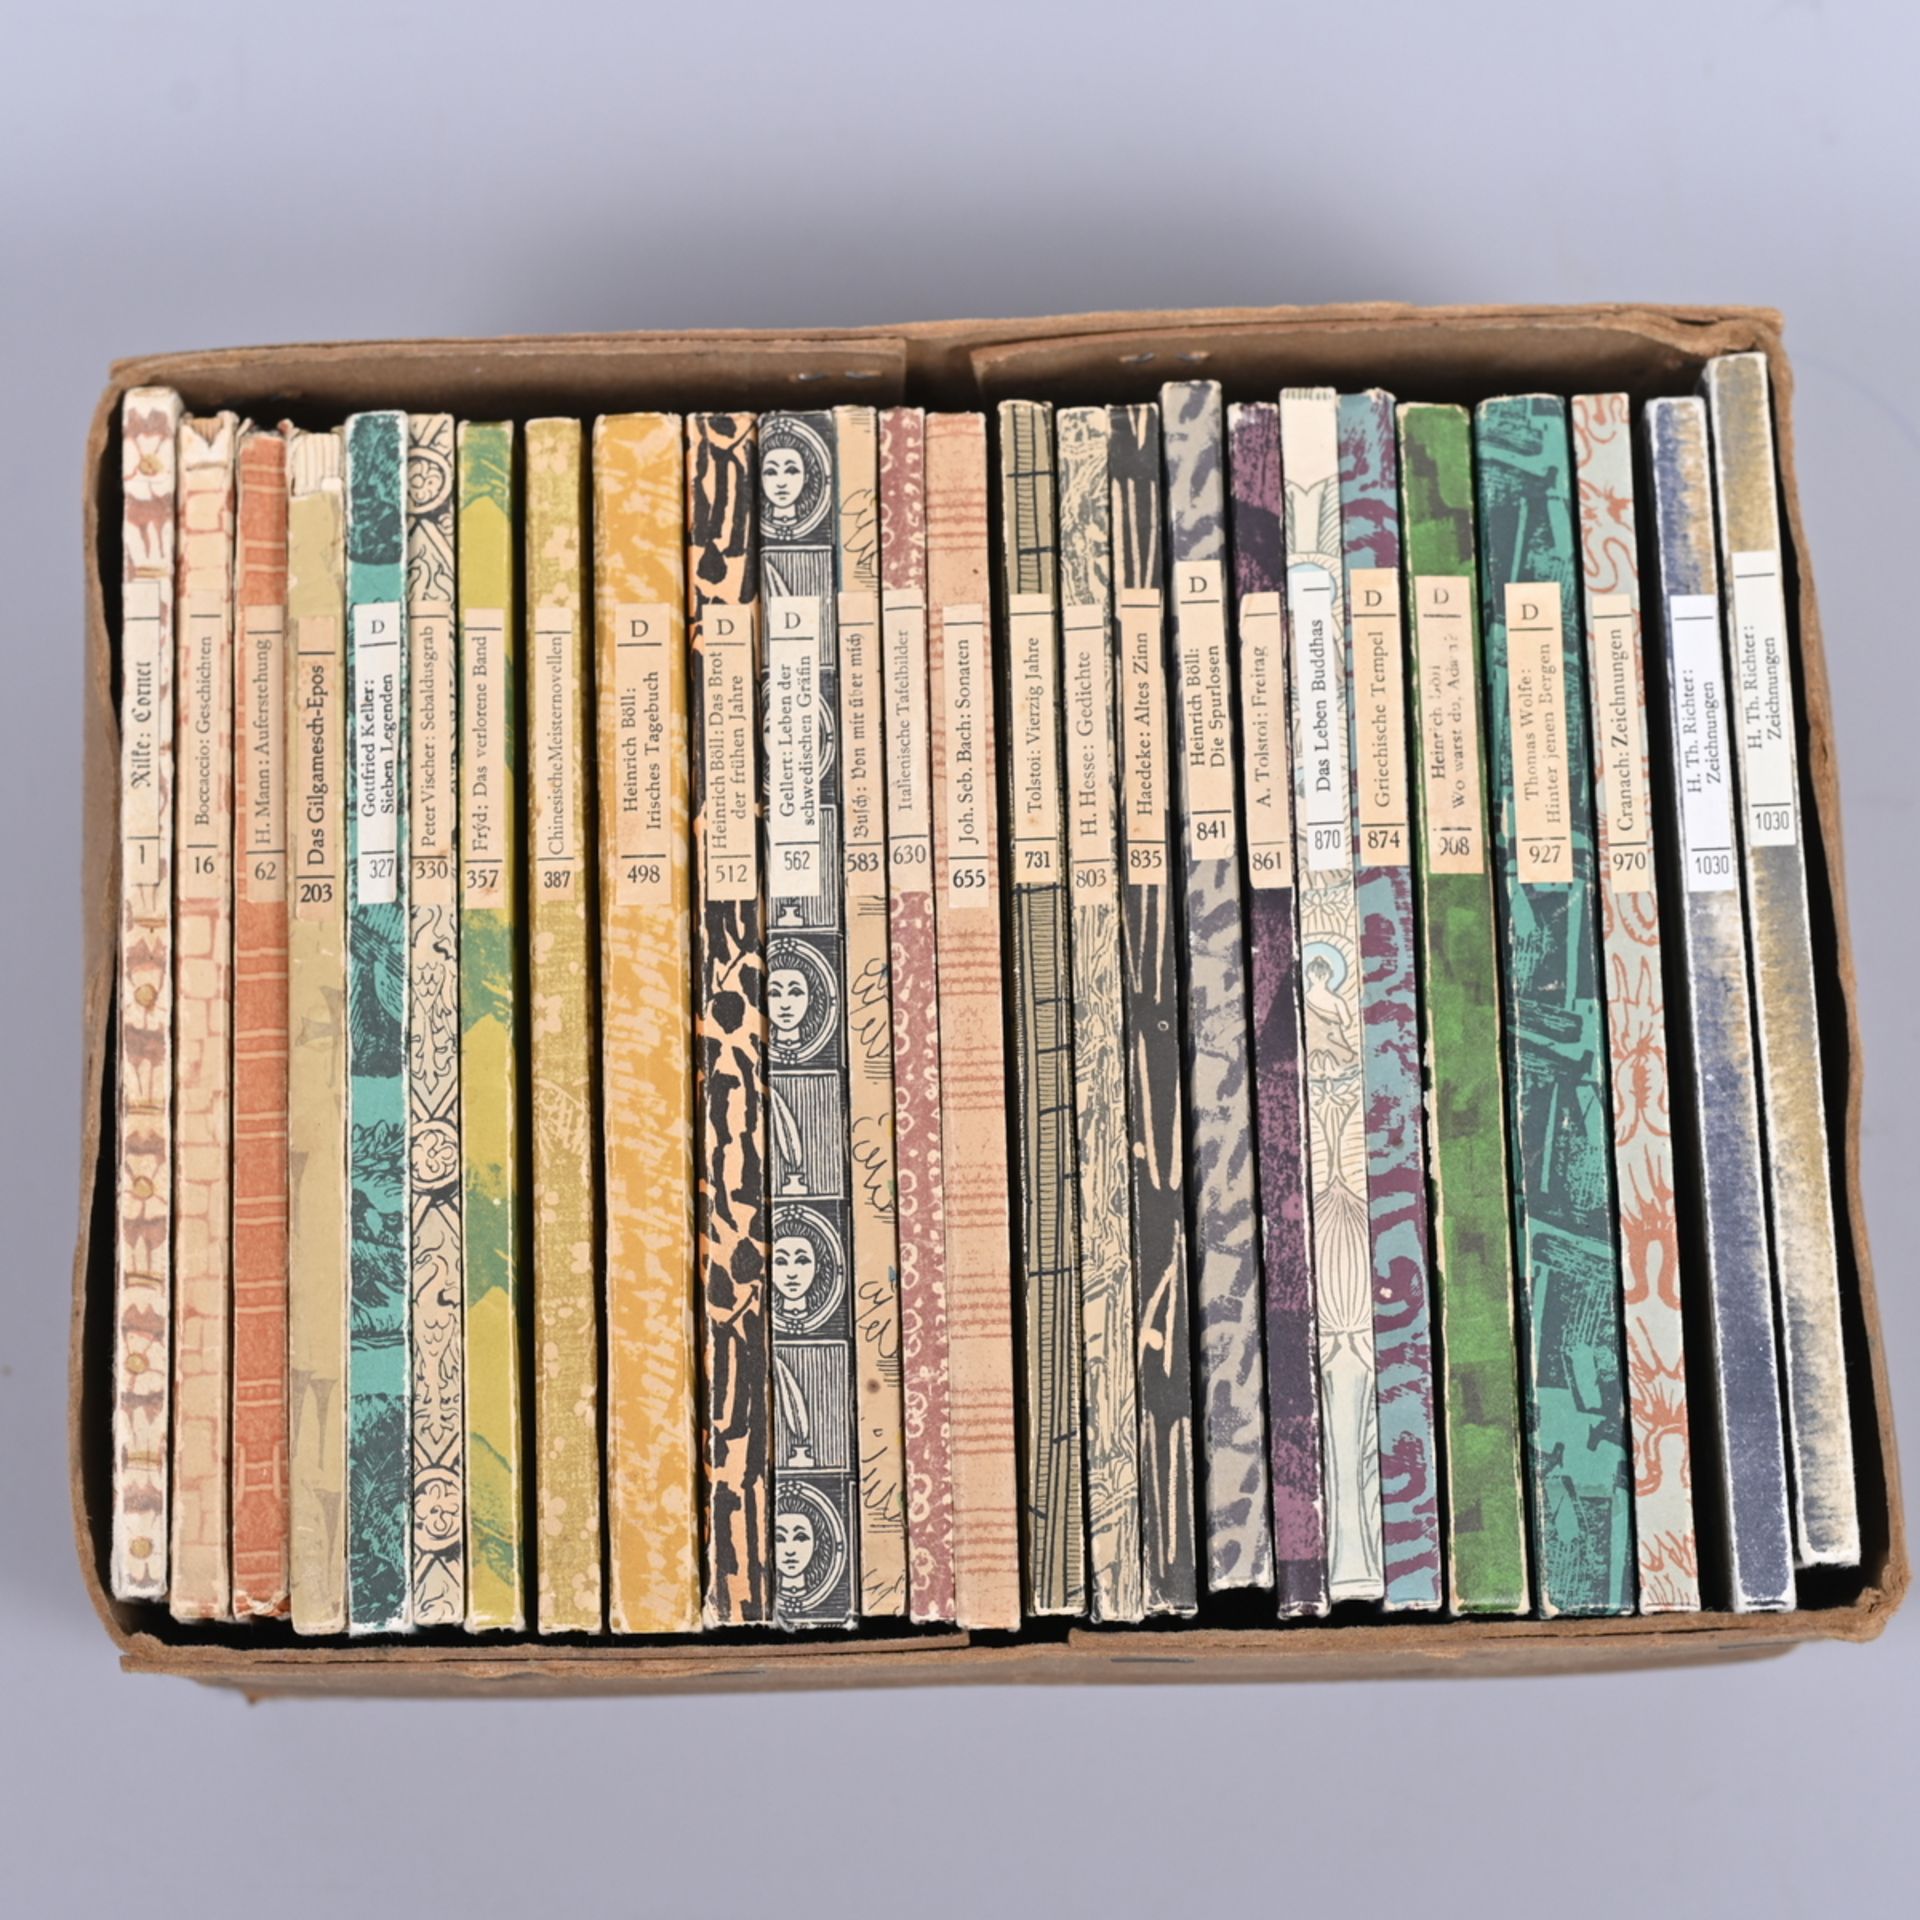 " Insel-Bücherei" 26 Bände, Band 1 Rilke 1940, 16, 62, 203, 327, 330, 357, 387, 498, 512, 562,